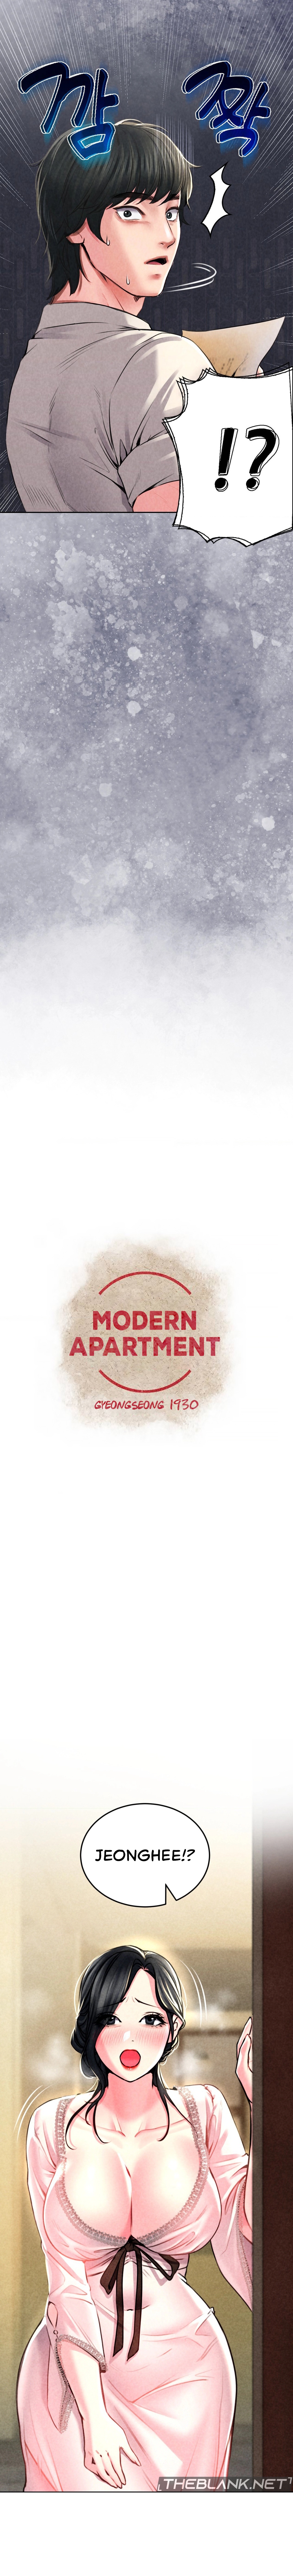 Read manhwa Modern Apartment, Gyeongseong 1930 Chapter 5 - SauceManhwa.com